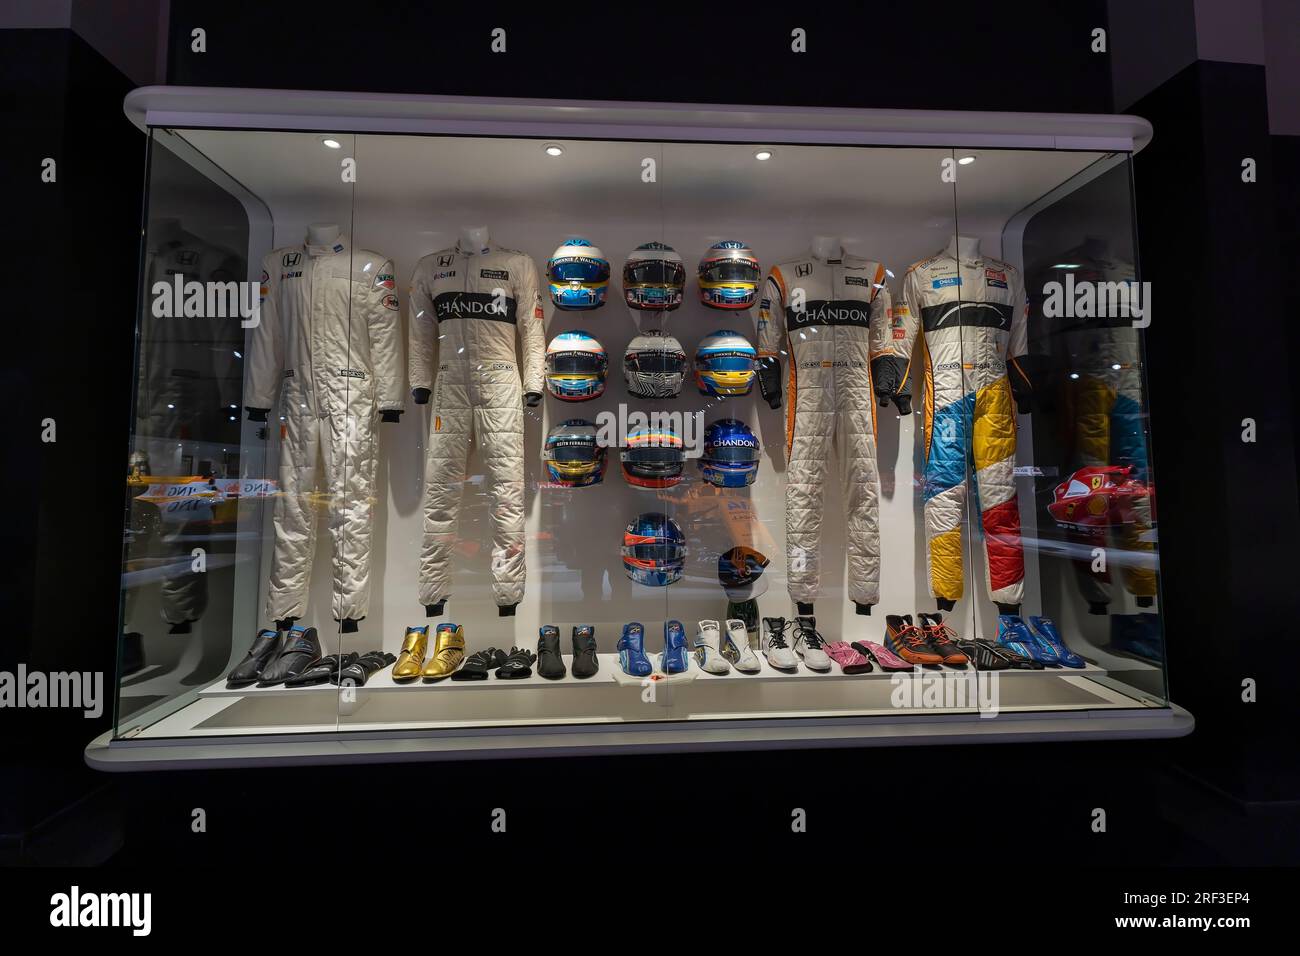 Kits utilisés par Fernando Alonso dans sa dernière étape dans l'écurie McLaren F1. Photographie prise au Musée Fernando Alonso en Espagne le 16 mai 2023. Banque D'Images